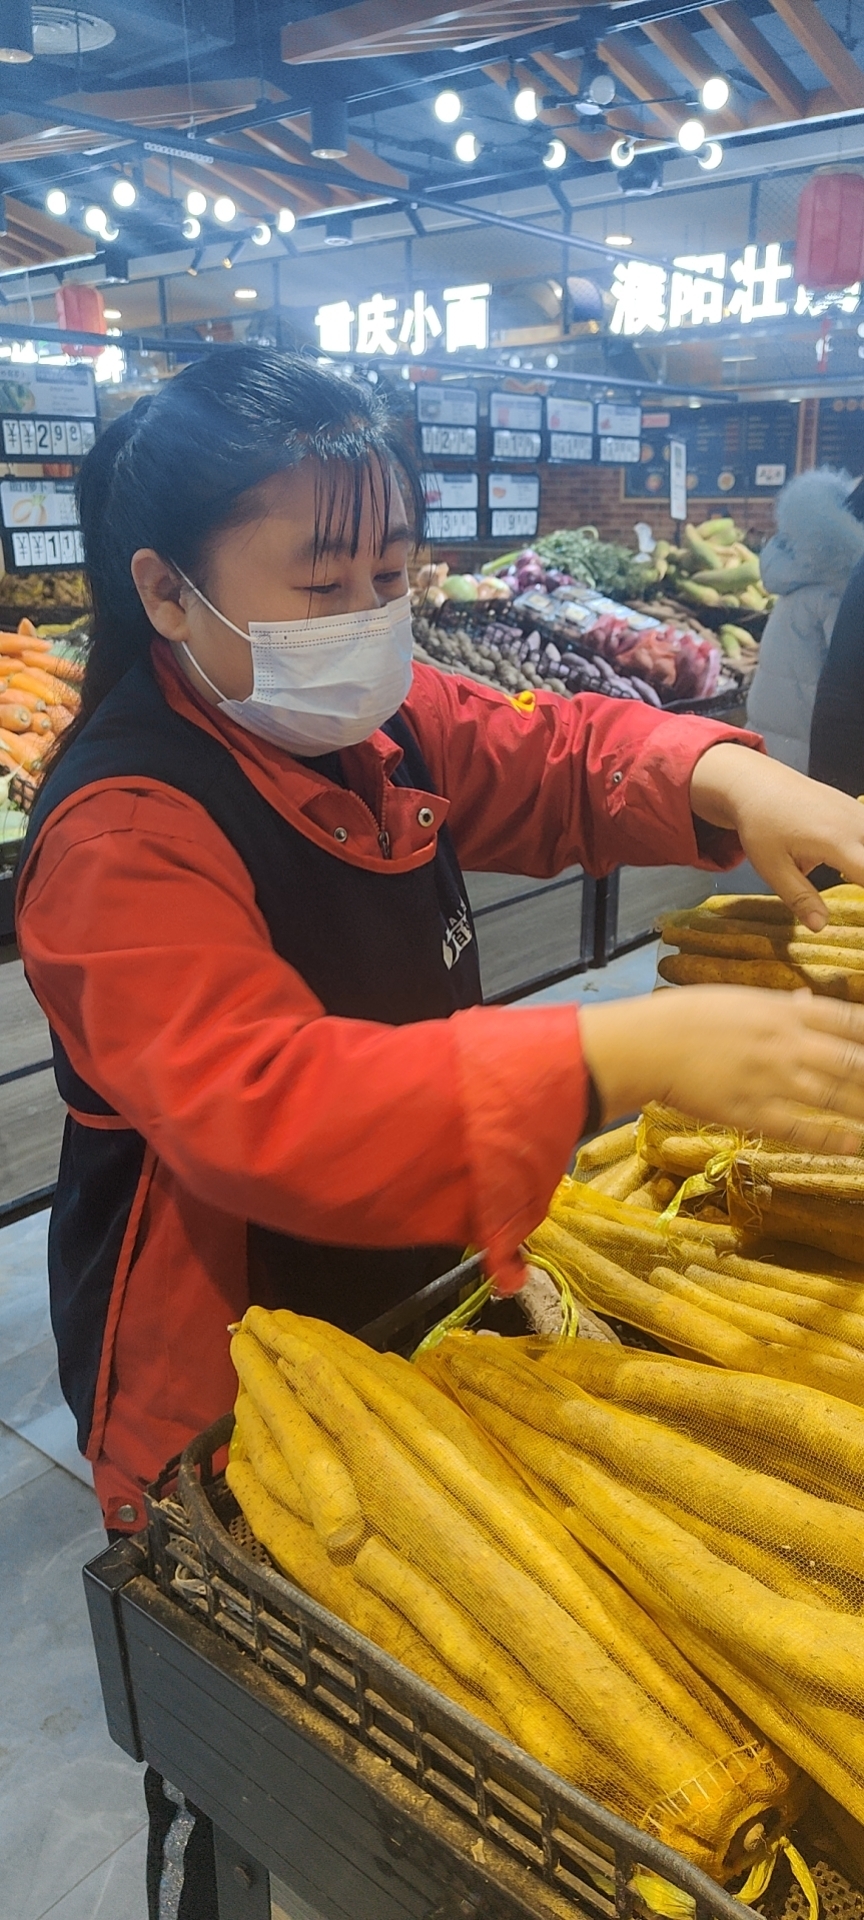 紫东店马志玲关键时刻挺身而出  保护顾客人身安全